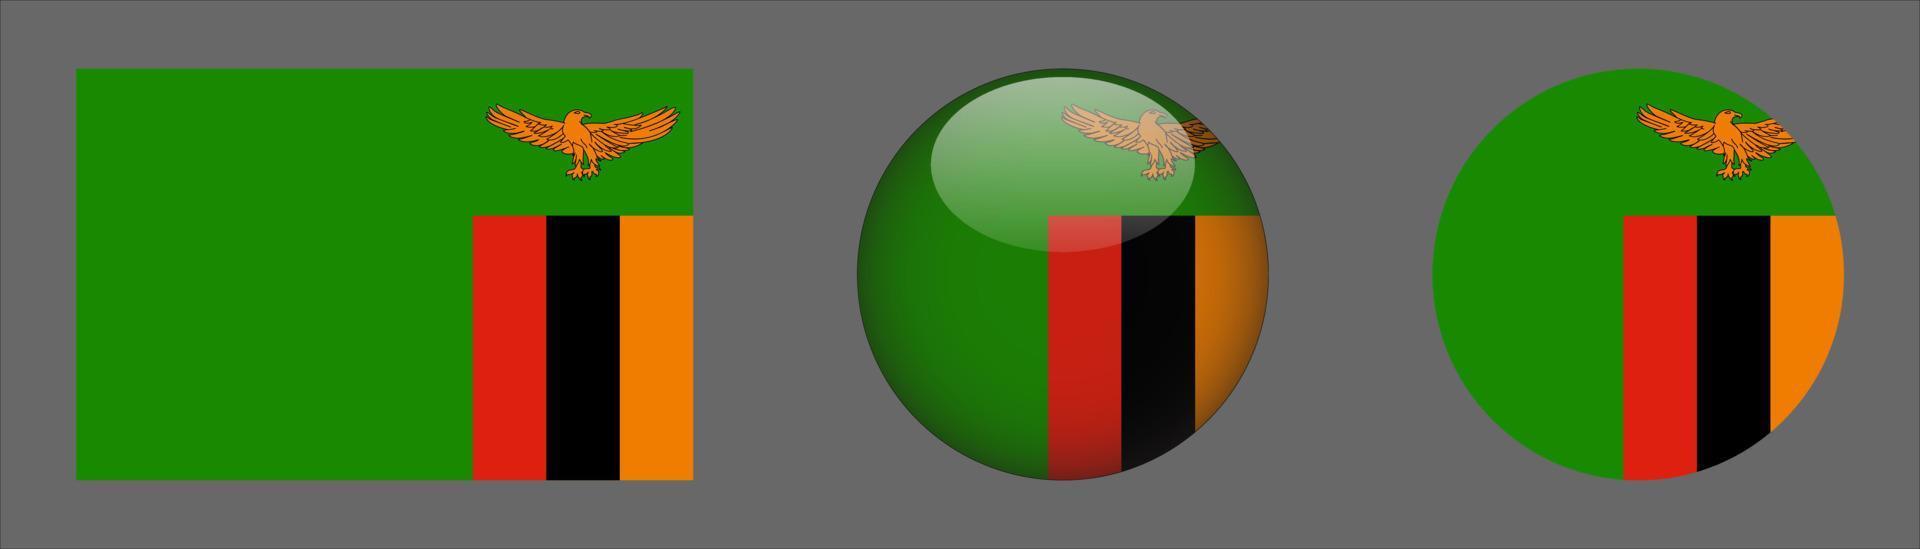 coleção do conjunto de bandeiras da zâmbia, proporção do tamanho original, 3d arredondado, plano arredondado. vetor